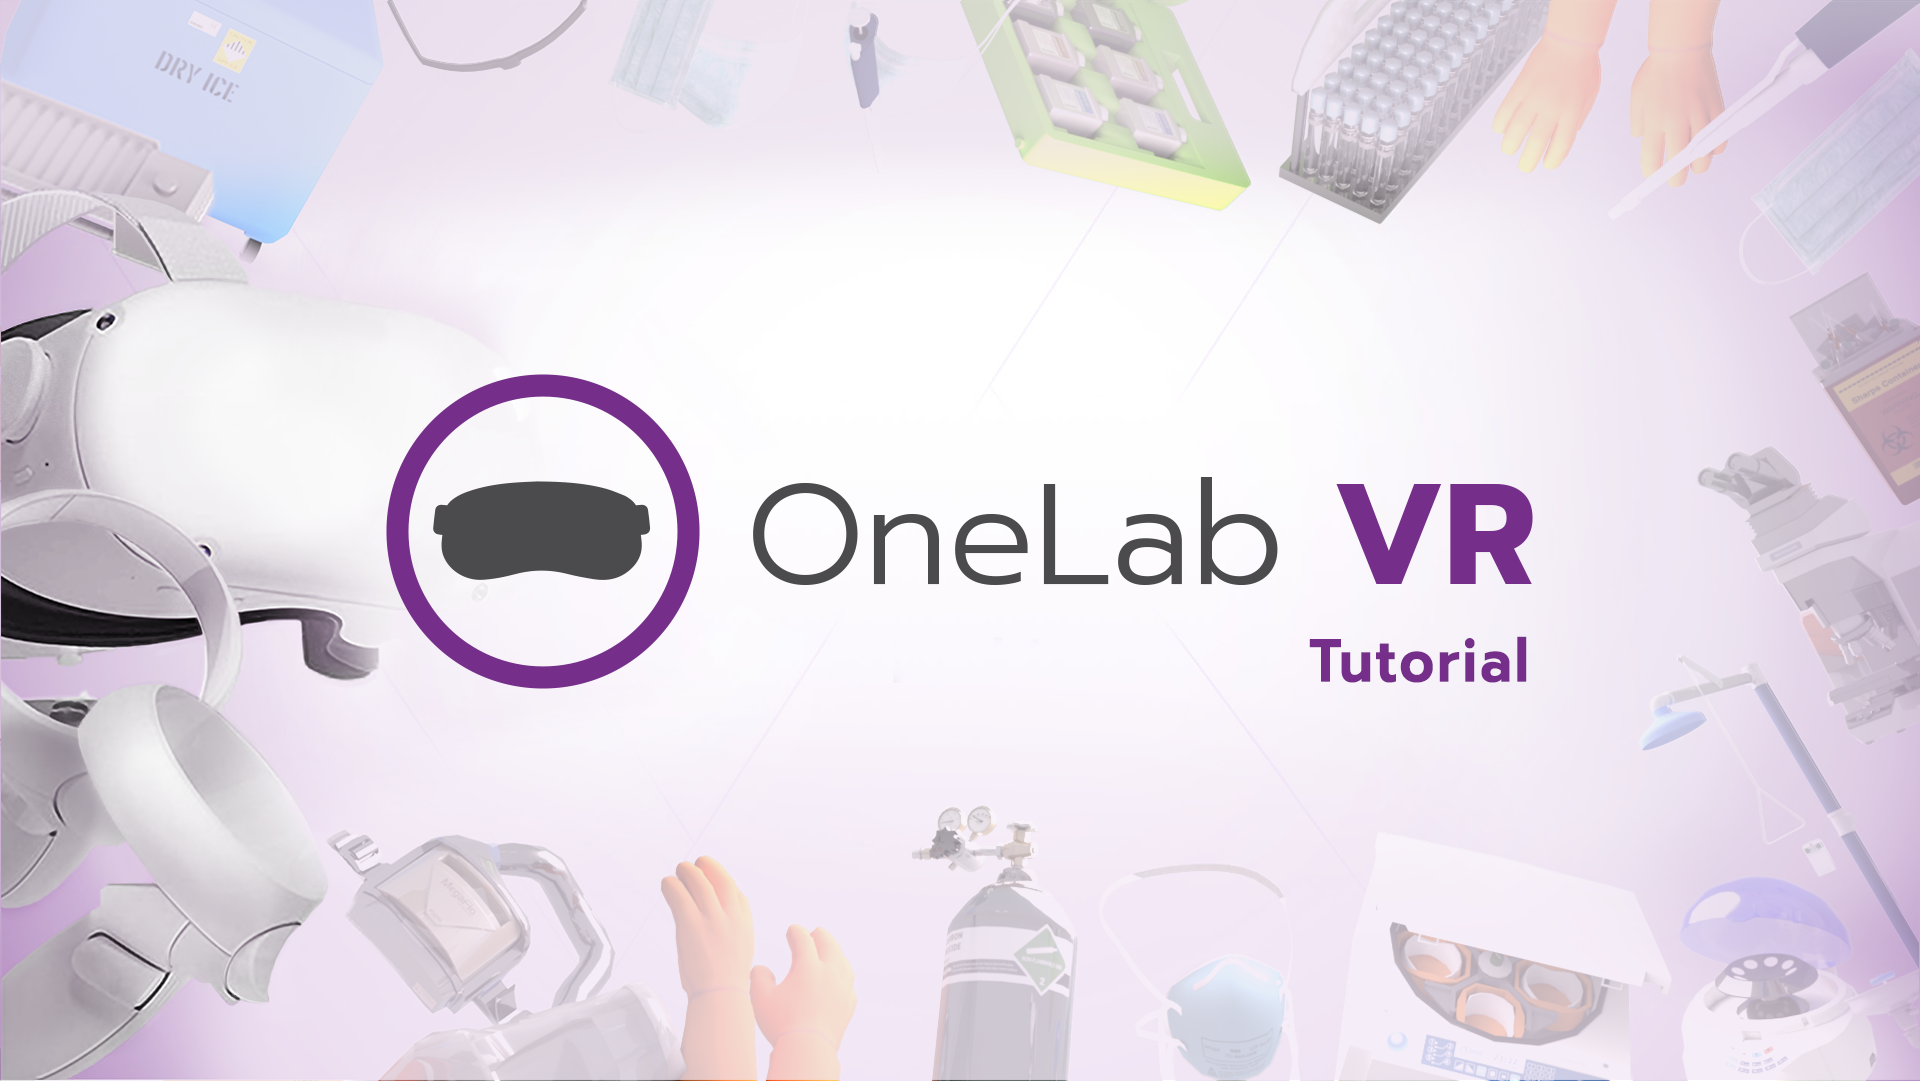 OneLab VR: Tutorial Scenario Image